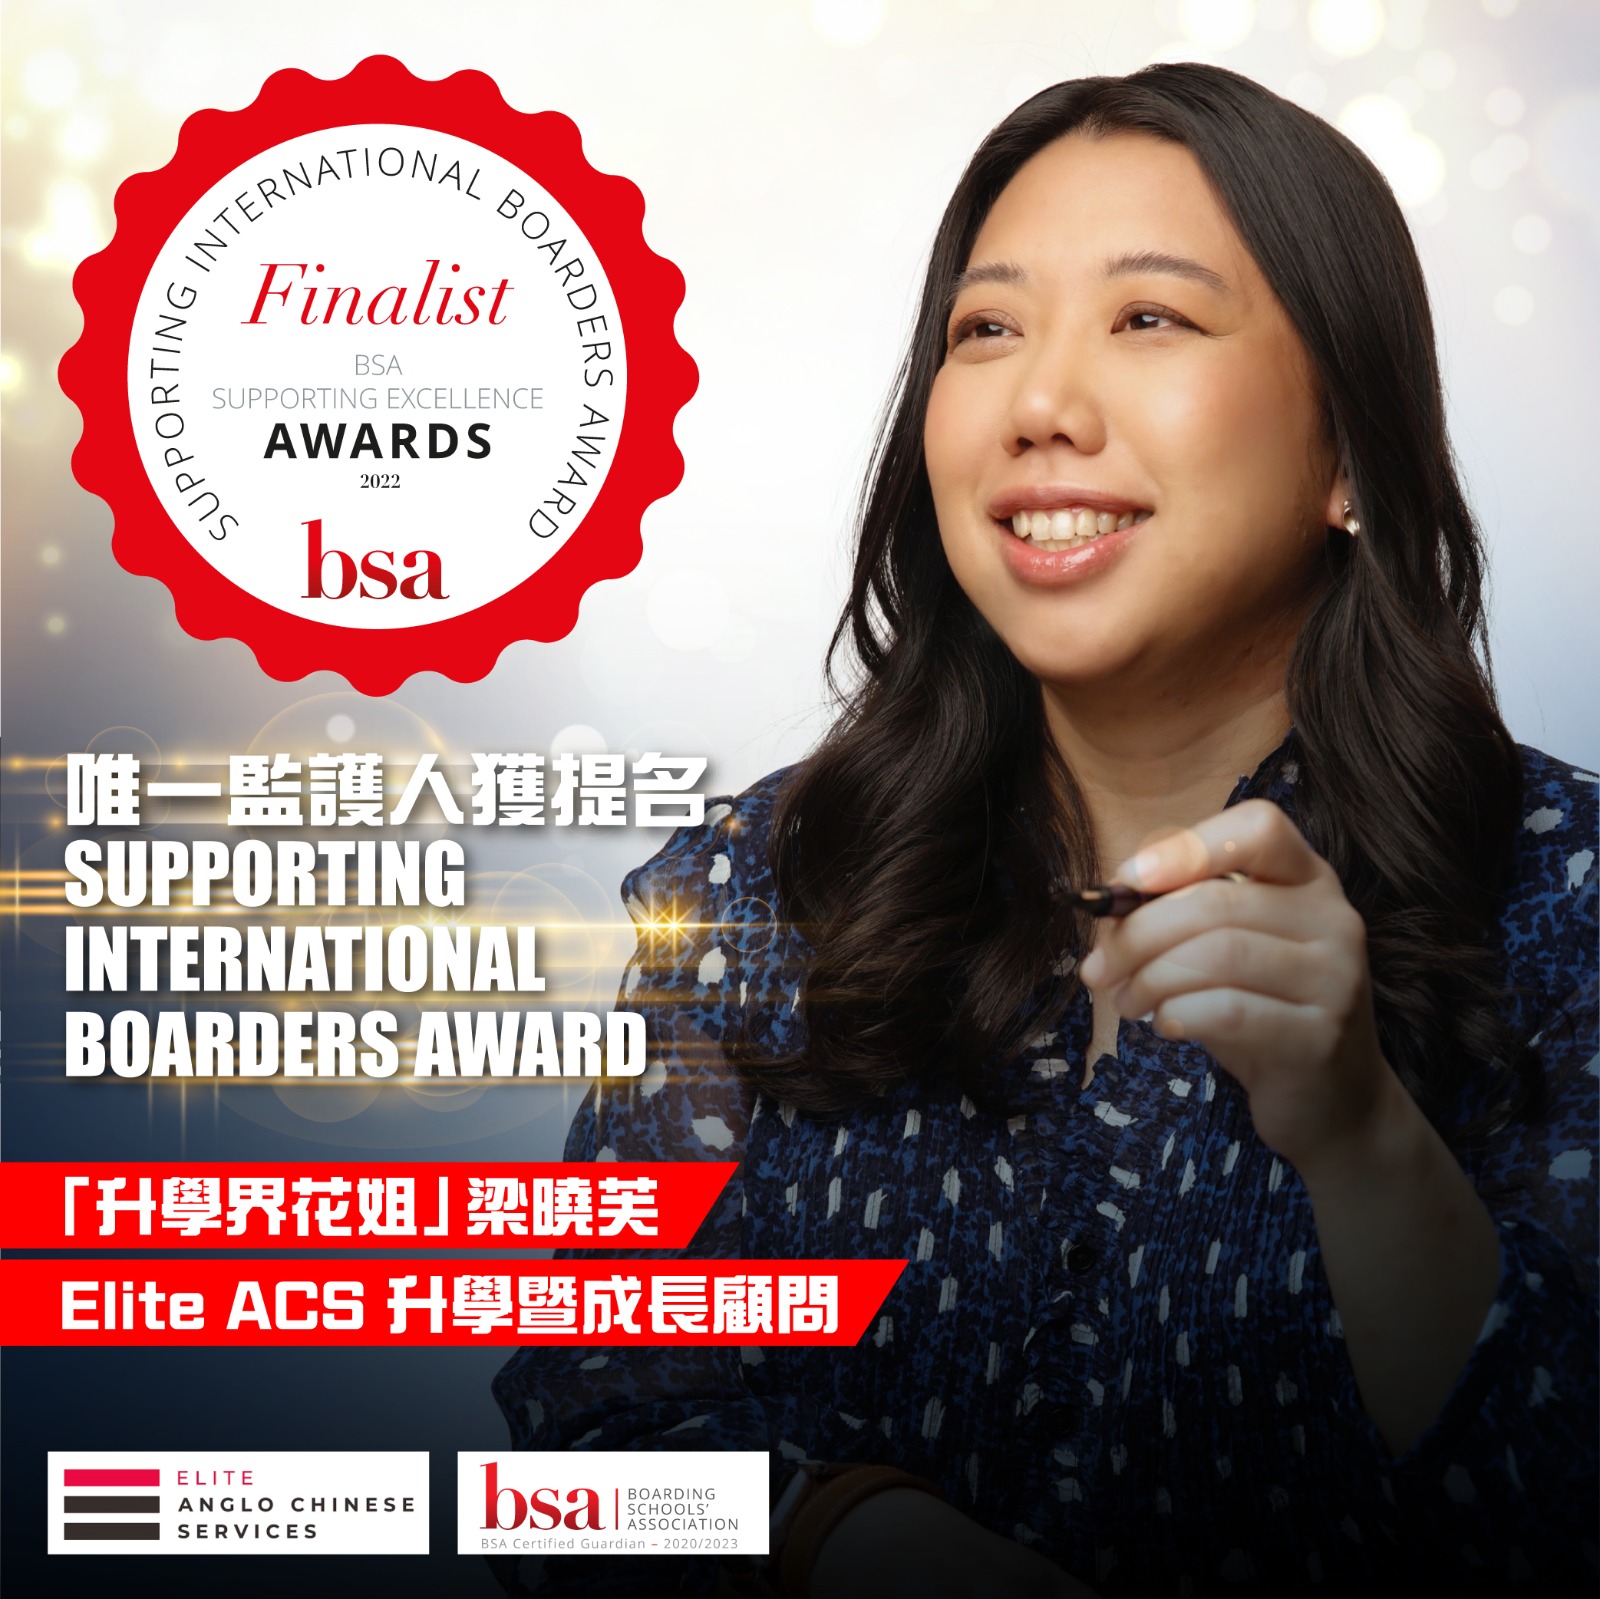 Eve Leung BSA finalist